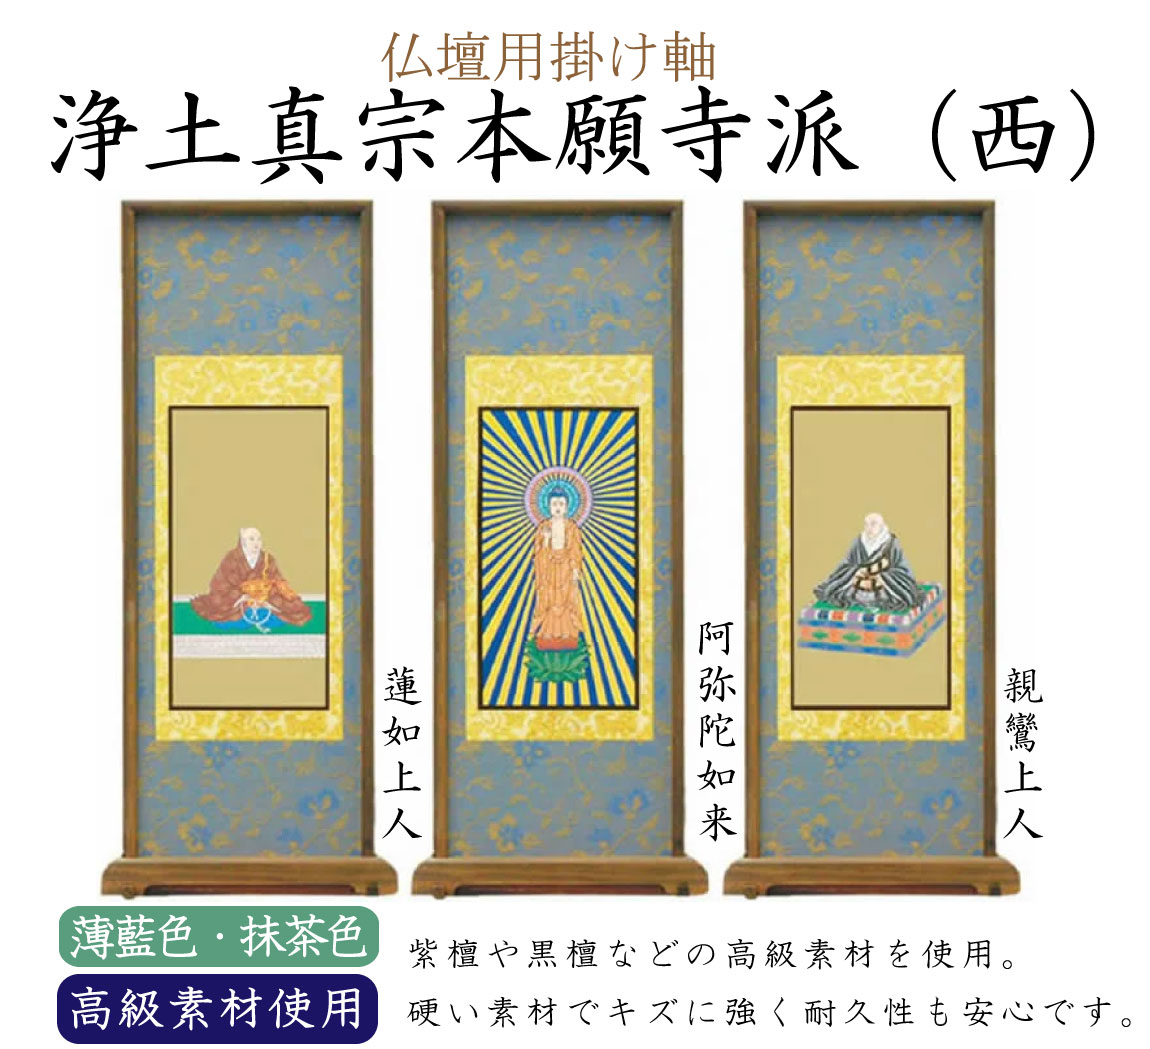 【高級素材】浄土真宗本願寺派（西）の仏壇用スタンド掛け軸。中央（ご本尊）には阿弥陀如来、向かって右には親鸞上人、左には蓮如聖人がかかります。高級素材の紫檀や黒檀が使用されています。